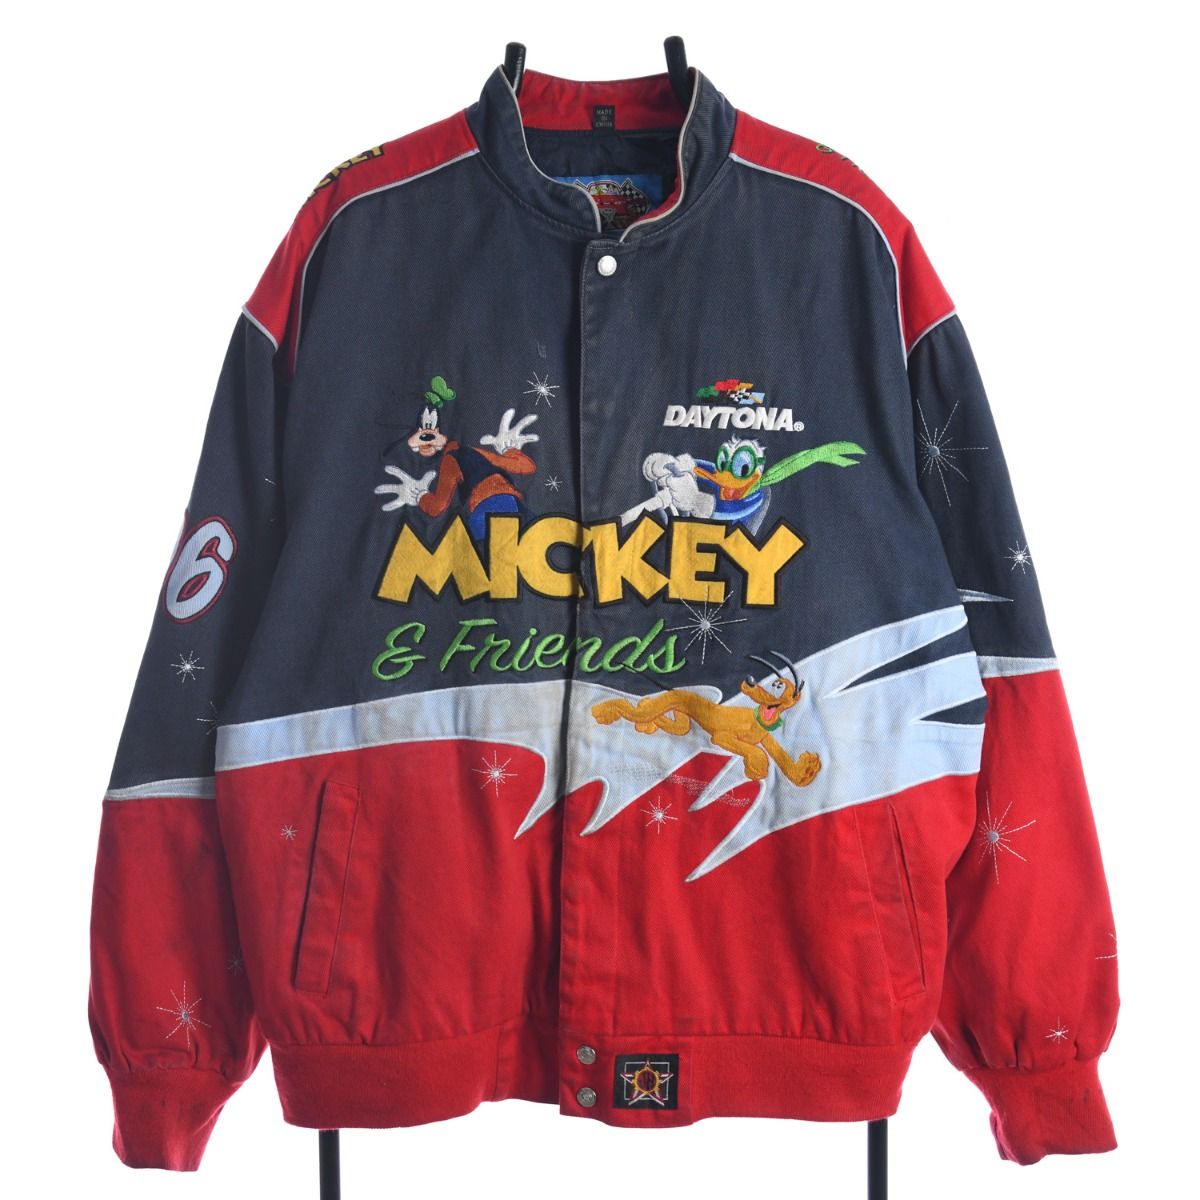 NASCAR Mickey & Friends Jacket